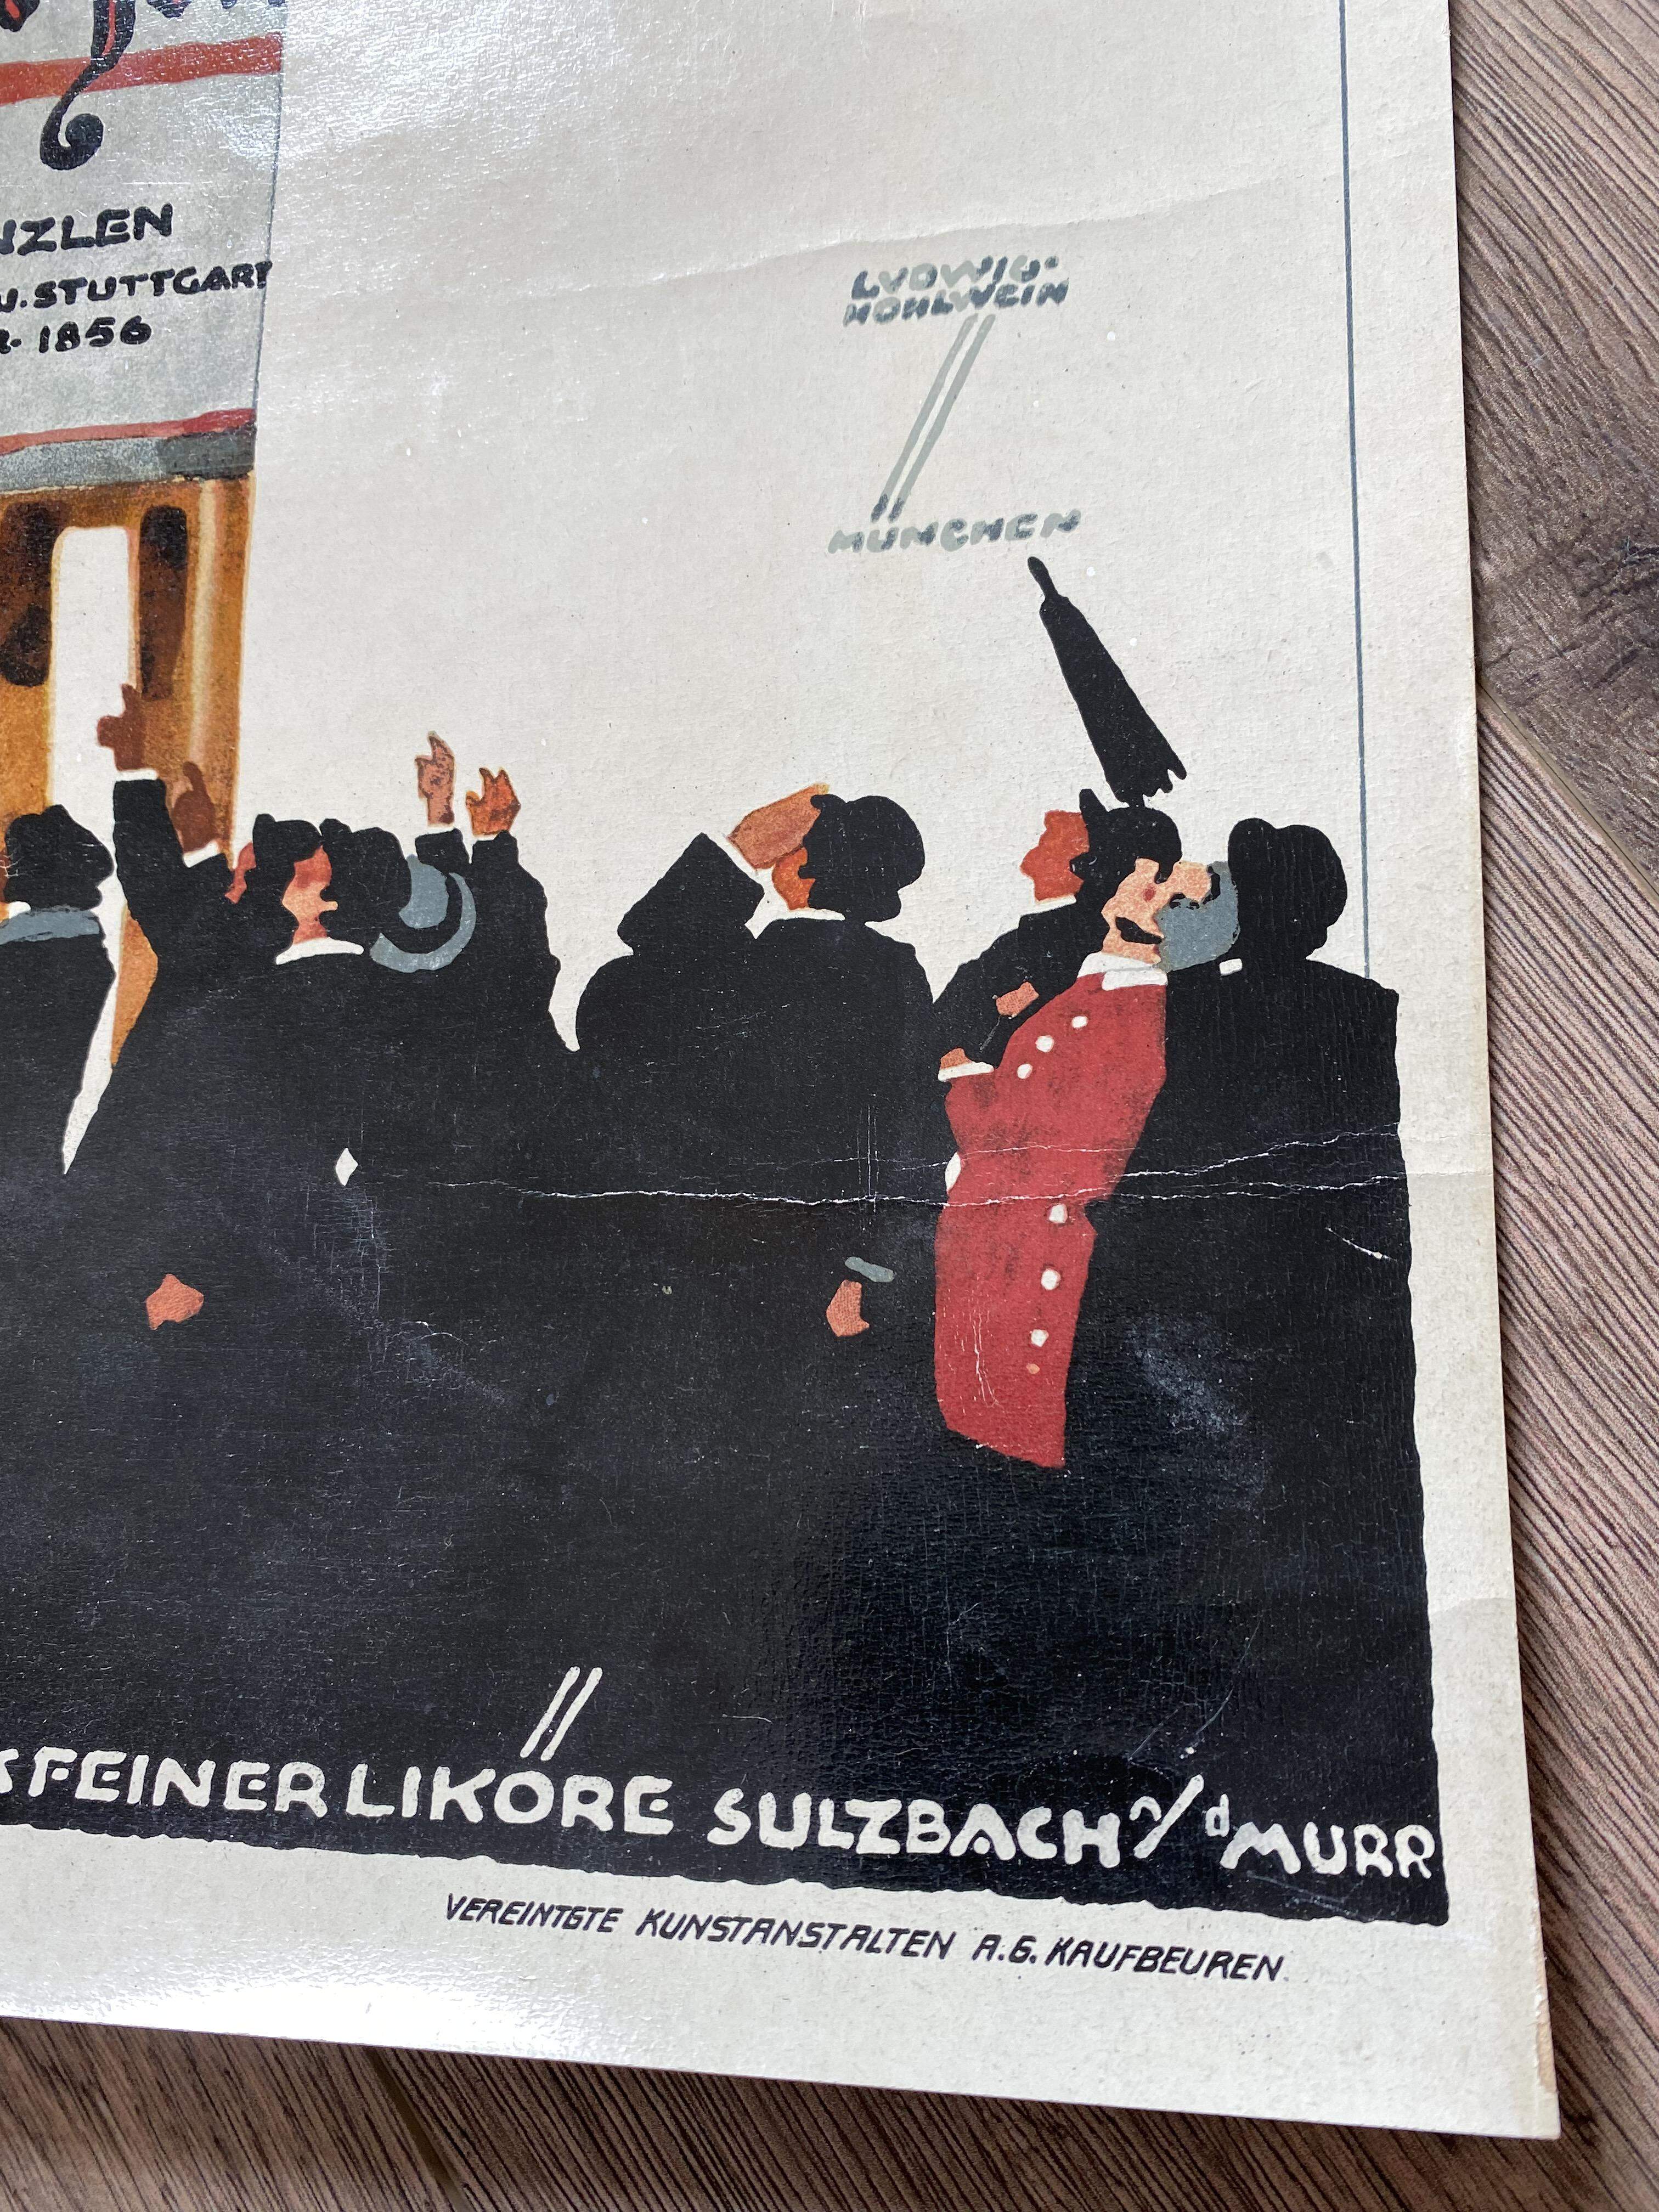 Altes Plakat Küenzlen Weinbrand Ludwig Hohlwein um 1950